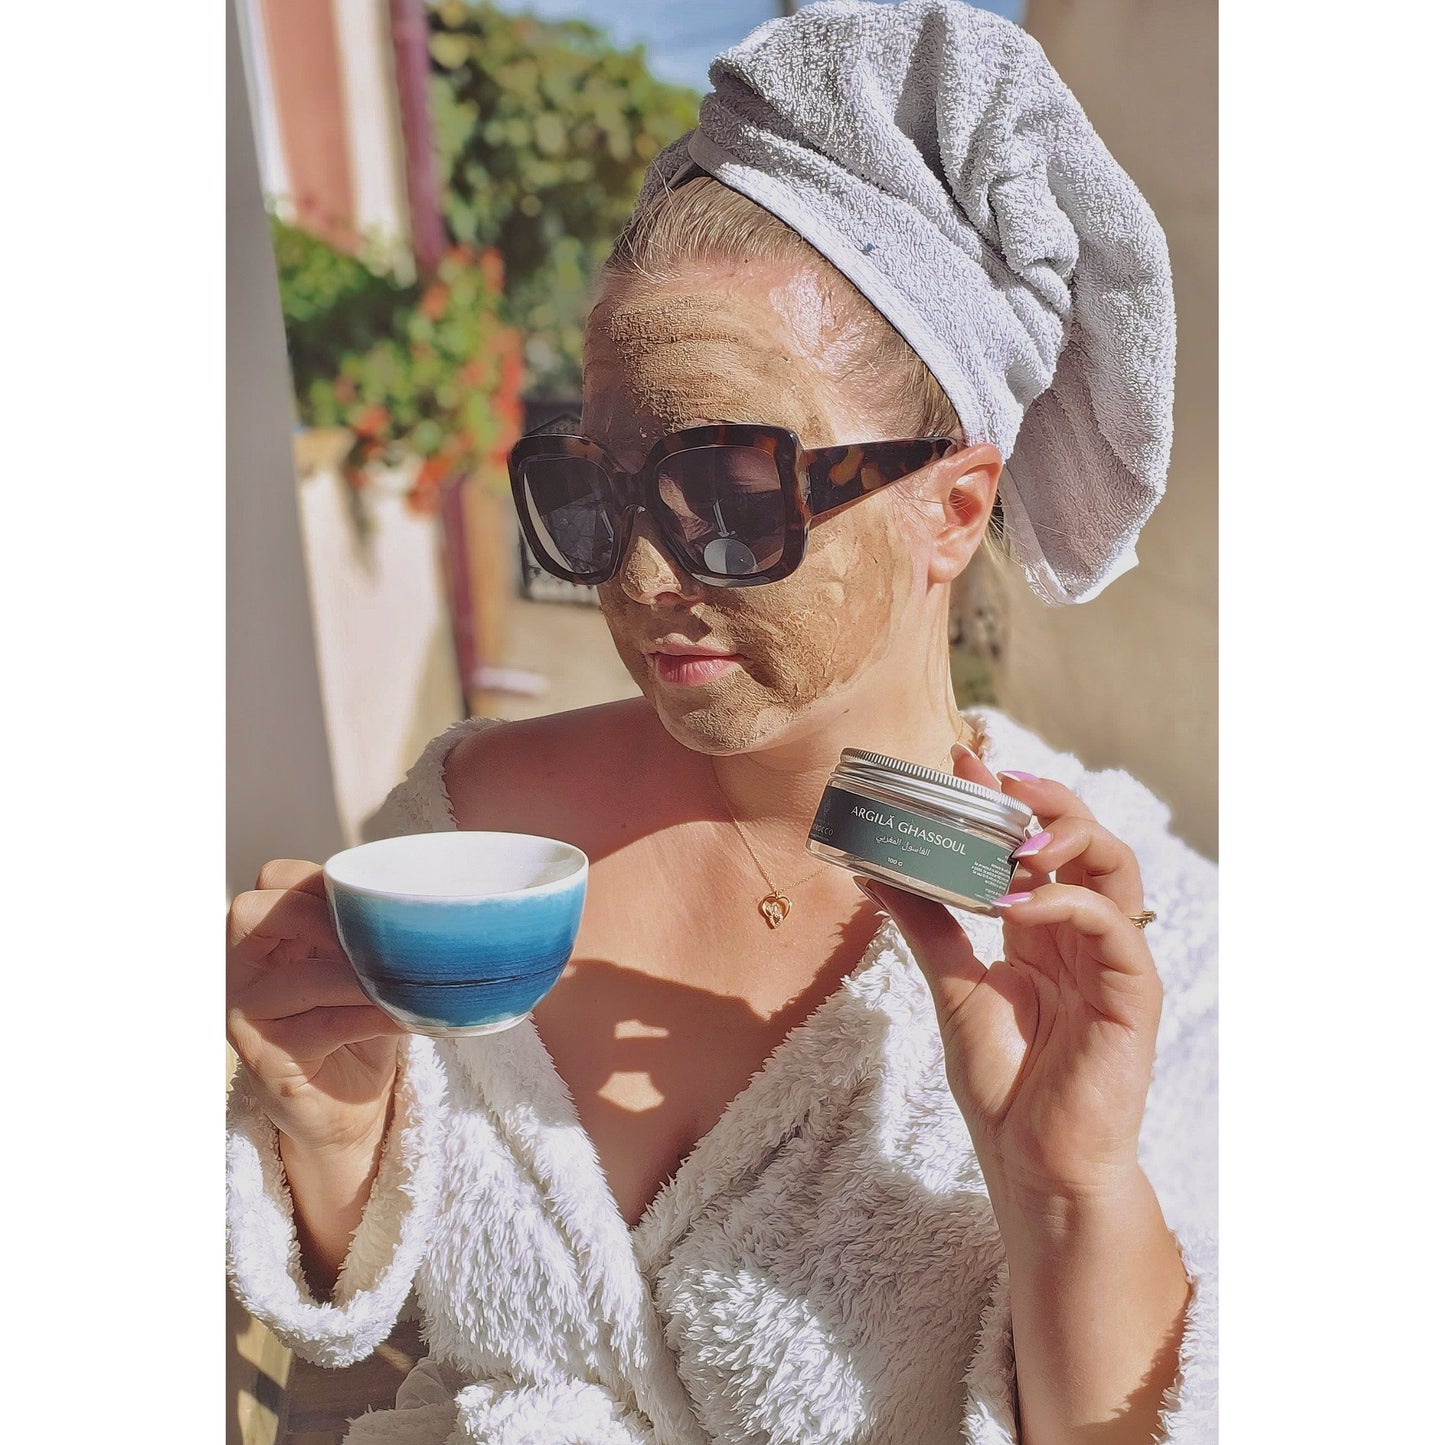 Fotografia captează o femeie în halat de baie alb, cu un prosop înfășurat pe cap, purtând ochelari de soare mari, și având aplicată o mască de argilă pe față. Ea ține o ceașcă de cafea sau ceai într-o mână și un recipient de 'ARGILĂ GHASSOUL' în cealaltă. Scena se desfășoară pe o terasă luminoasă, sub razele soarelui, sugerând o dimineață relaxantă sau un ritual de înfrumusețare în aer liber."